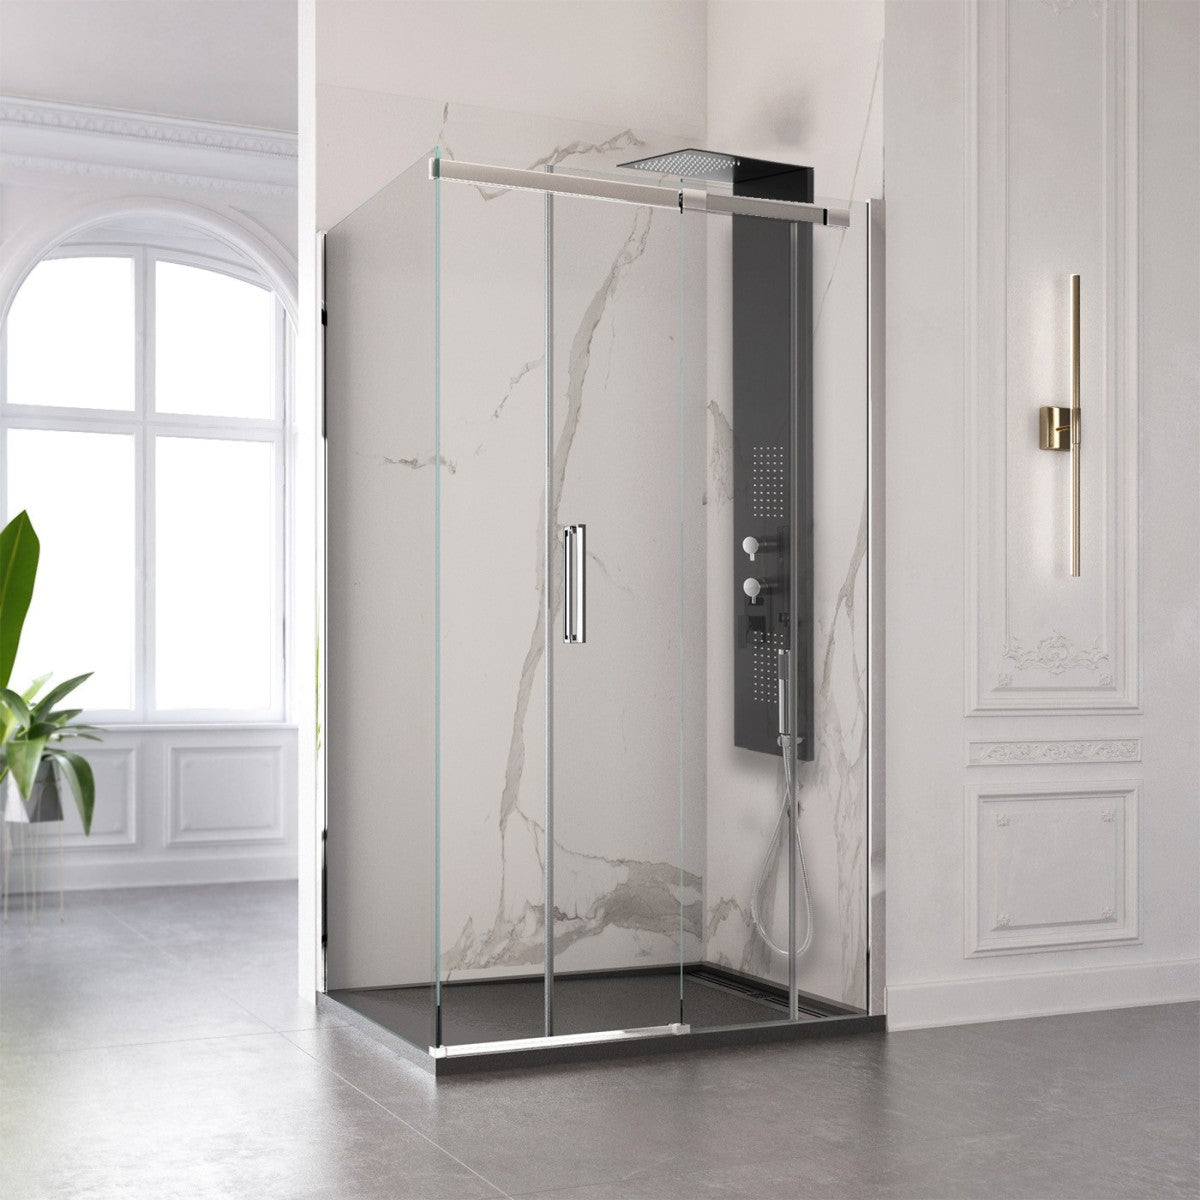 Colonna doccia cromata nera idromassaggio spa | flat